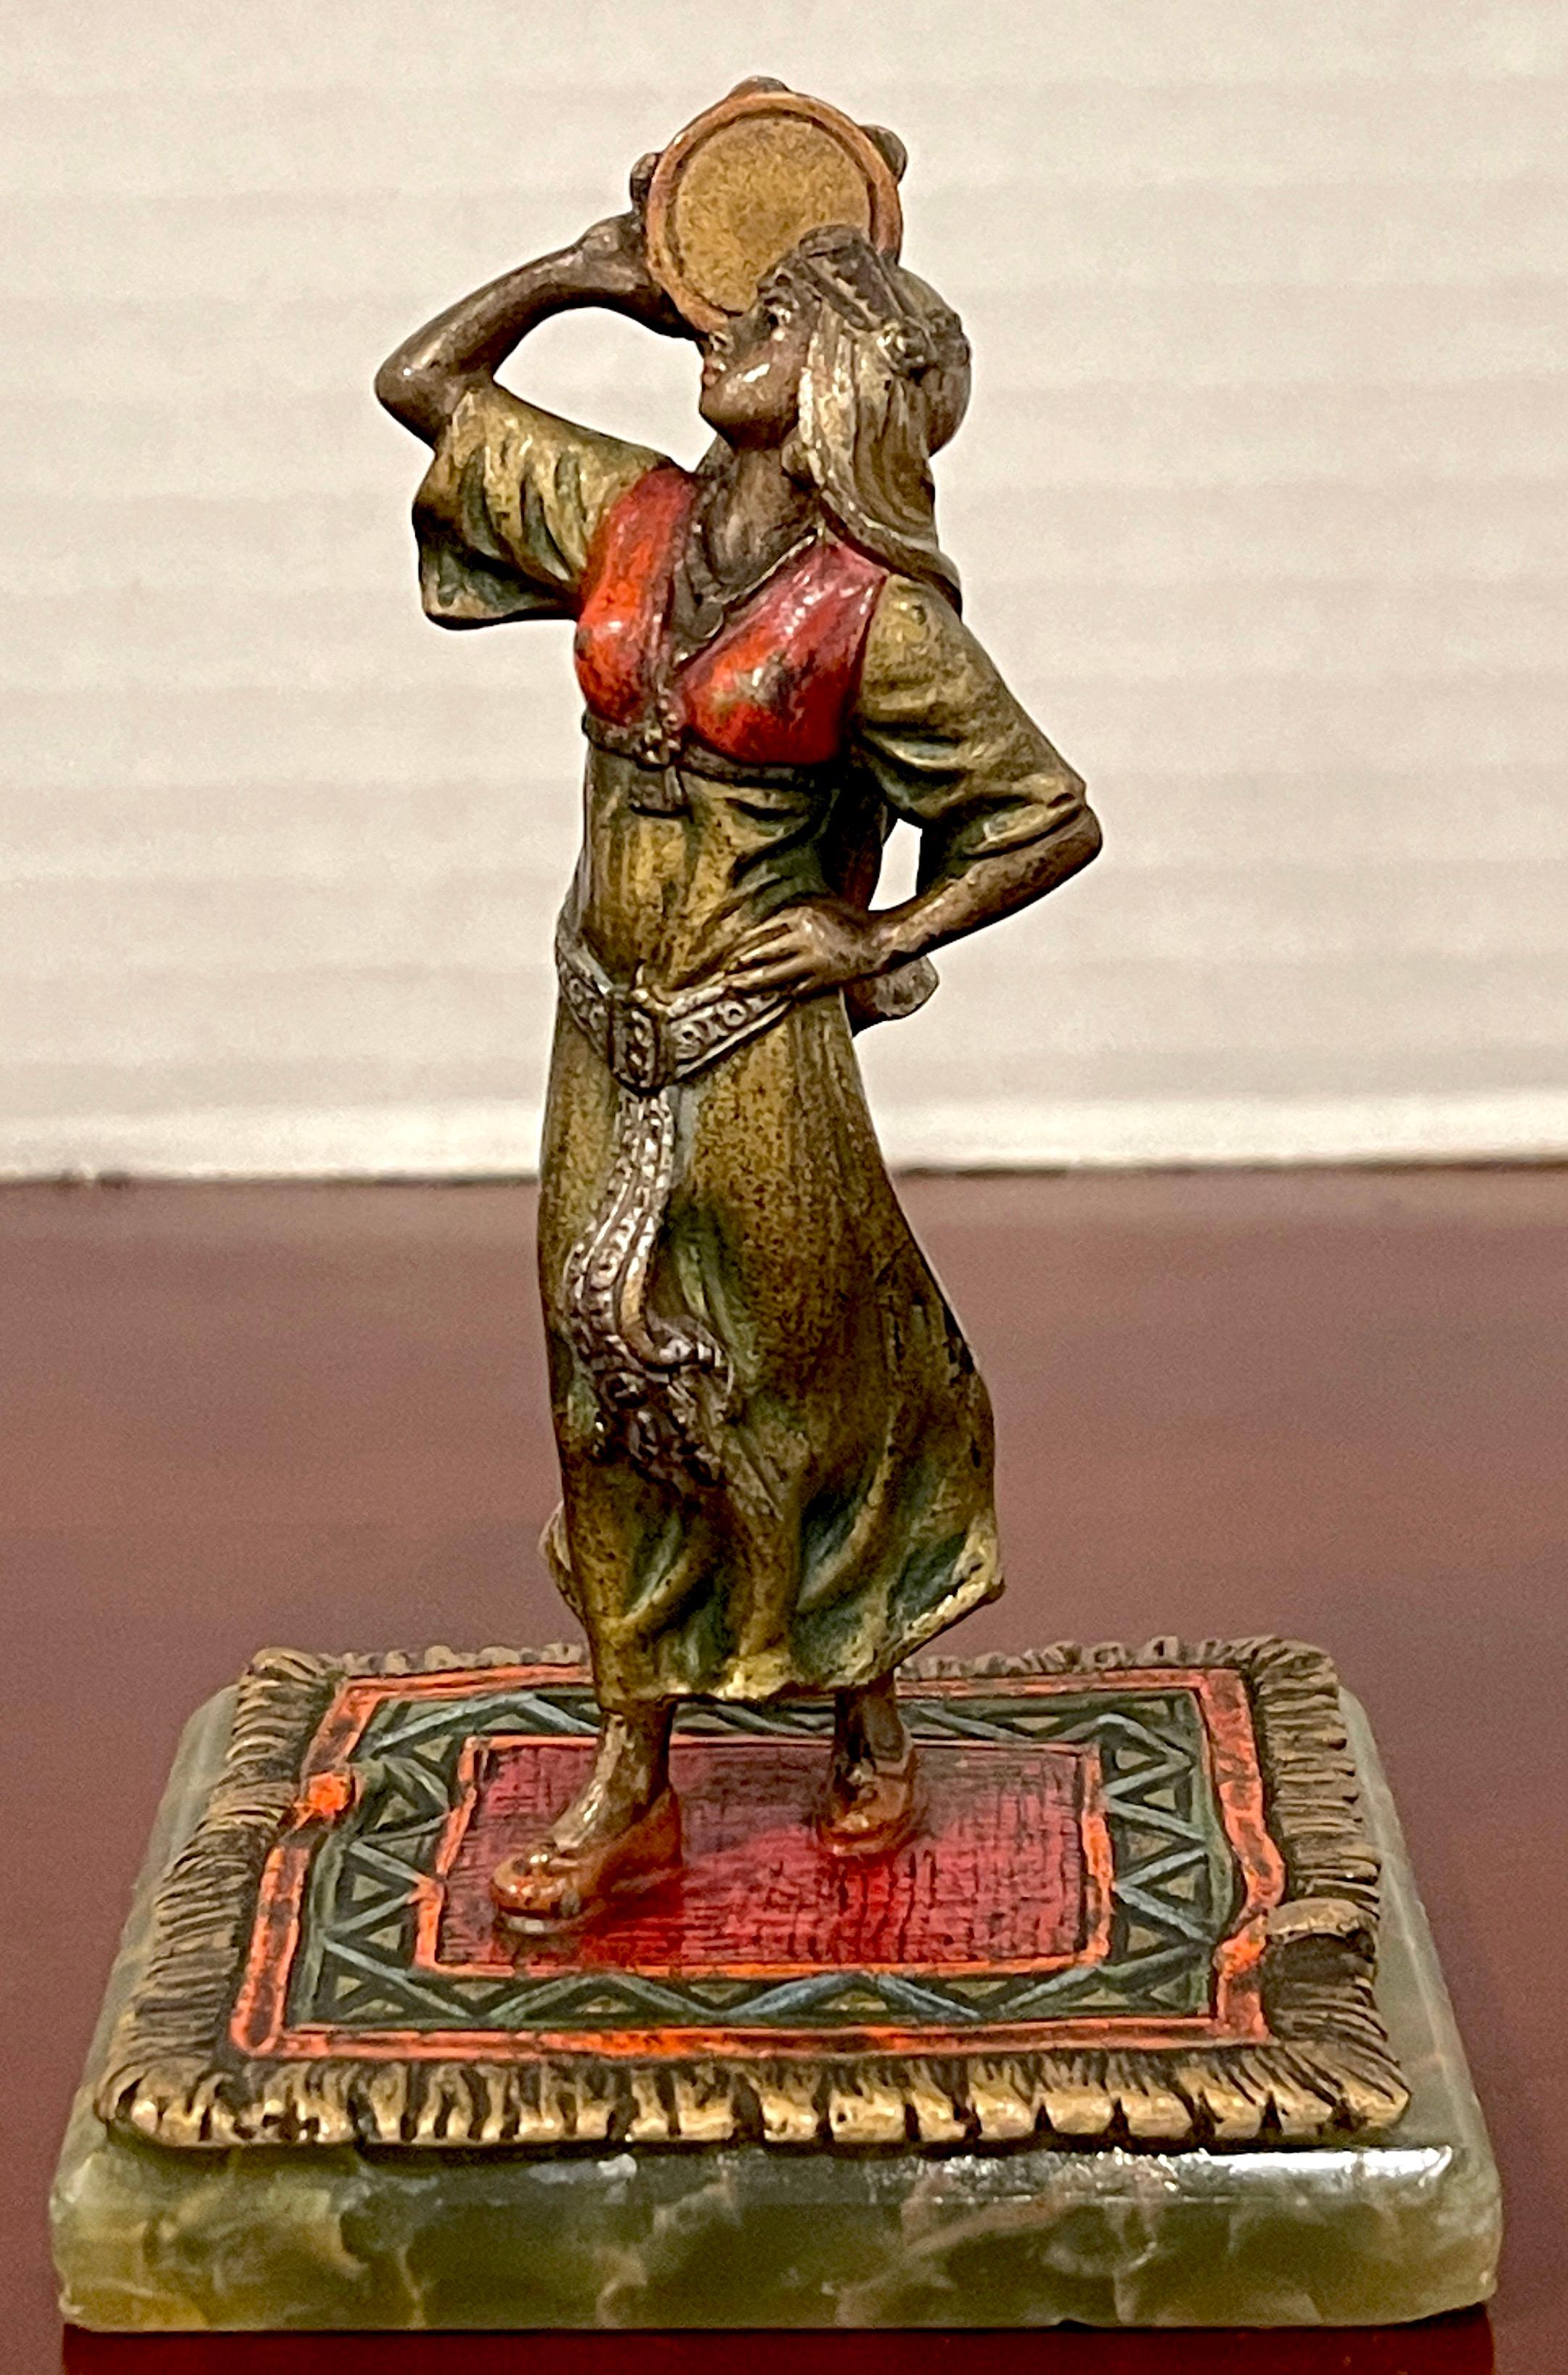 Wiener kalt bemalte Bronze 'Carmen', Bergman zugeschrieben, Brilliante Emaille, ein Zigeunermädchen mit Tamburin auf einem Orientteppich stehend, montiert auf einem passenden grünen Onyxsockel.